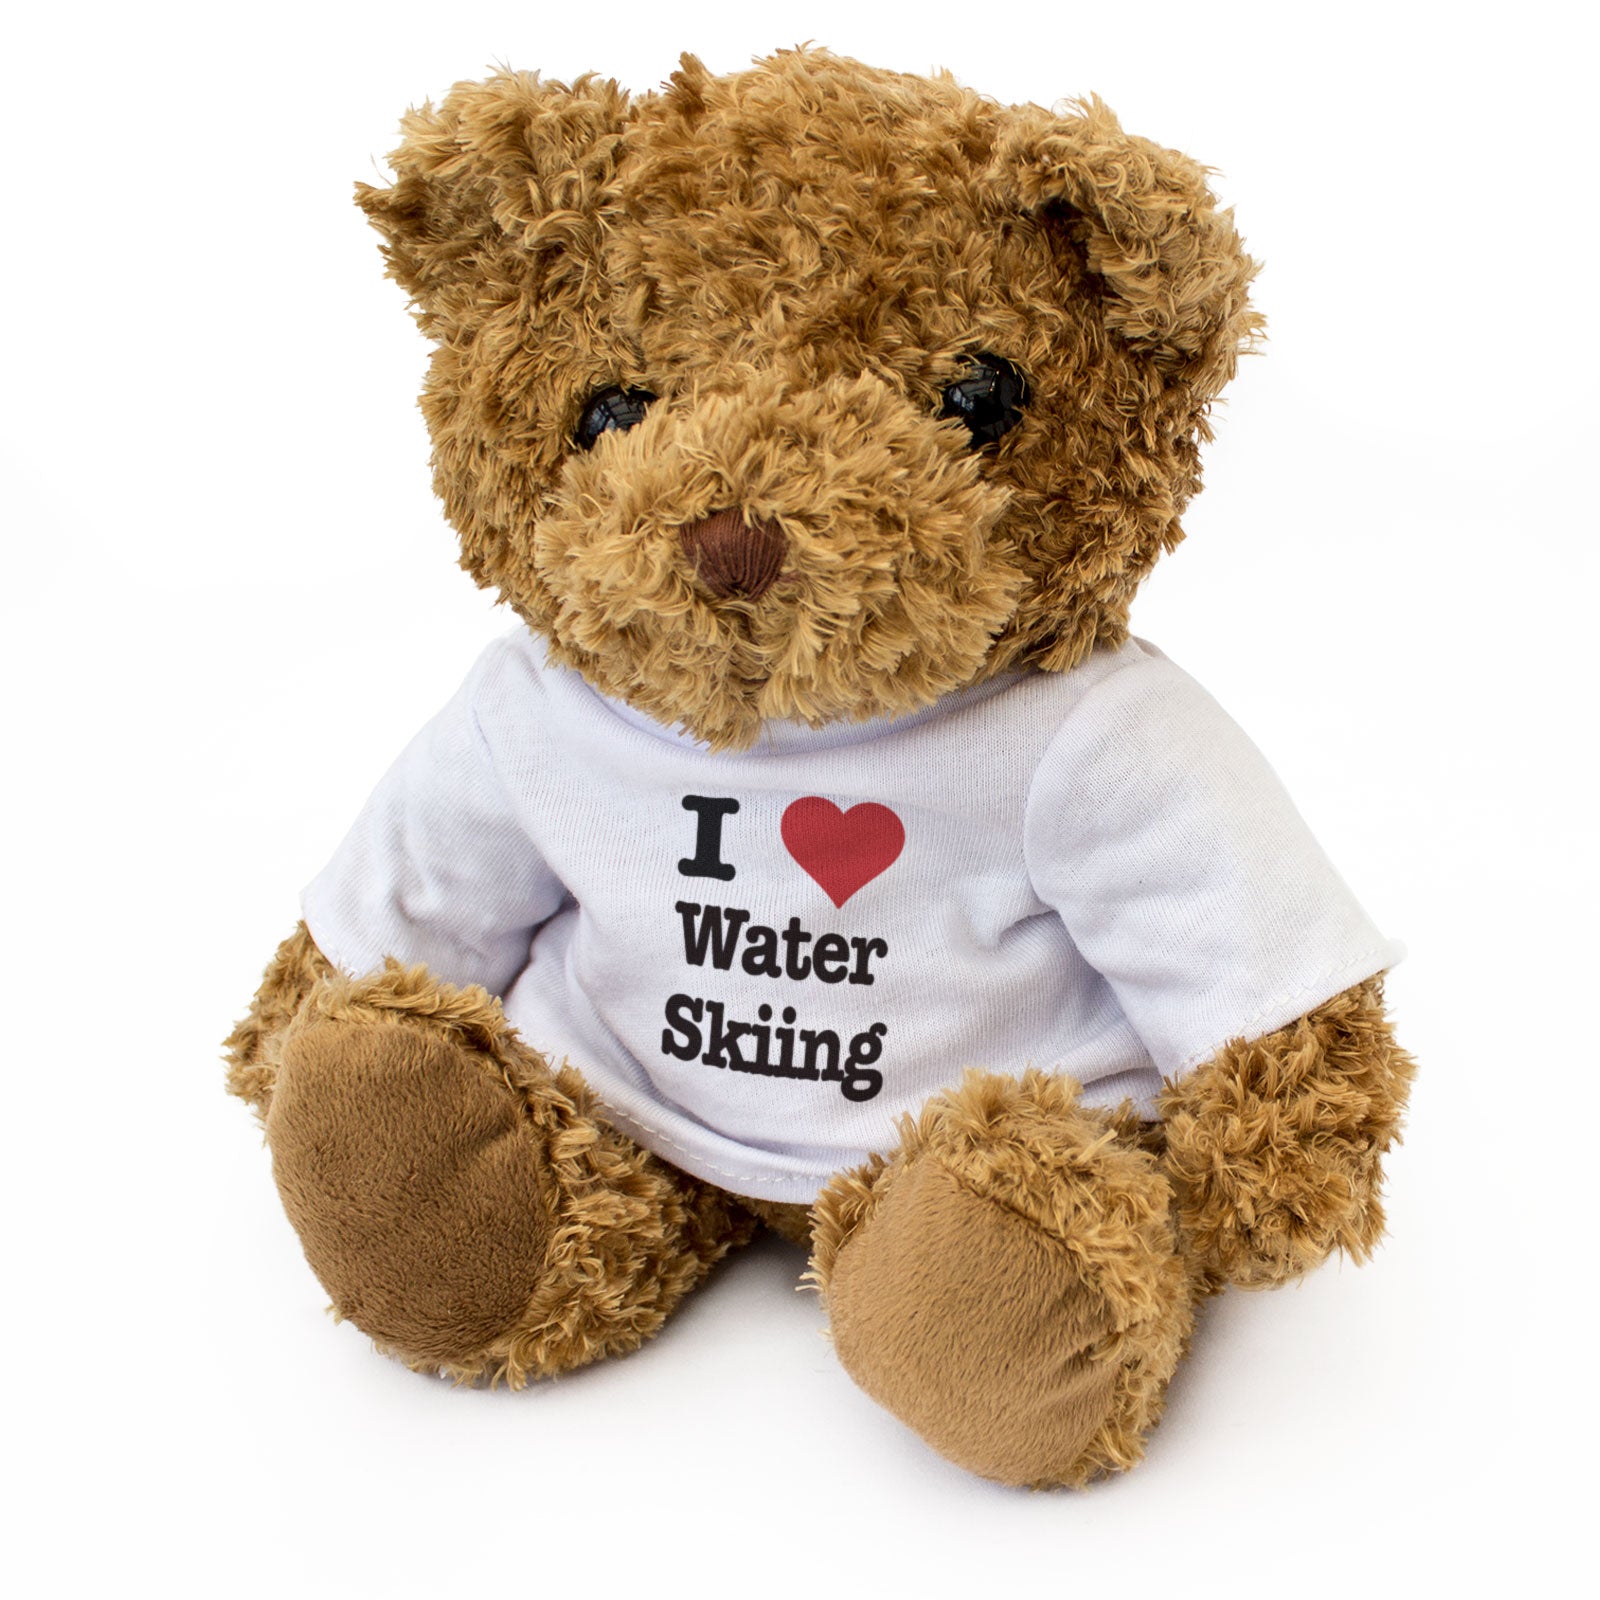 I Love Water Skiing - Teddy Bear